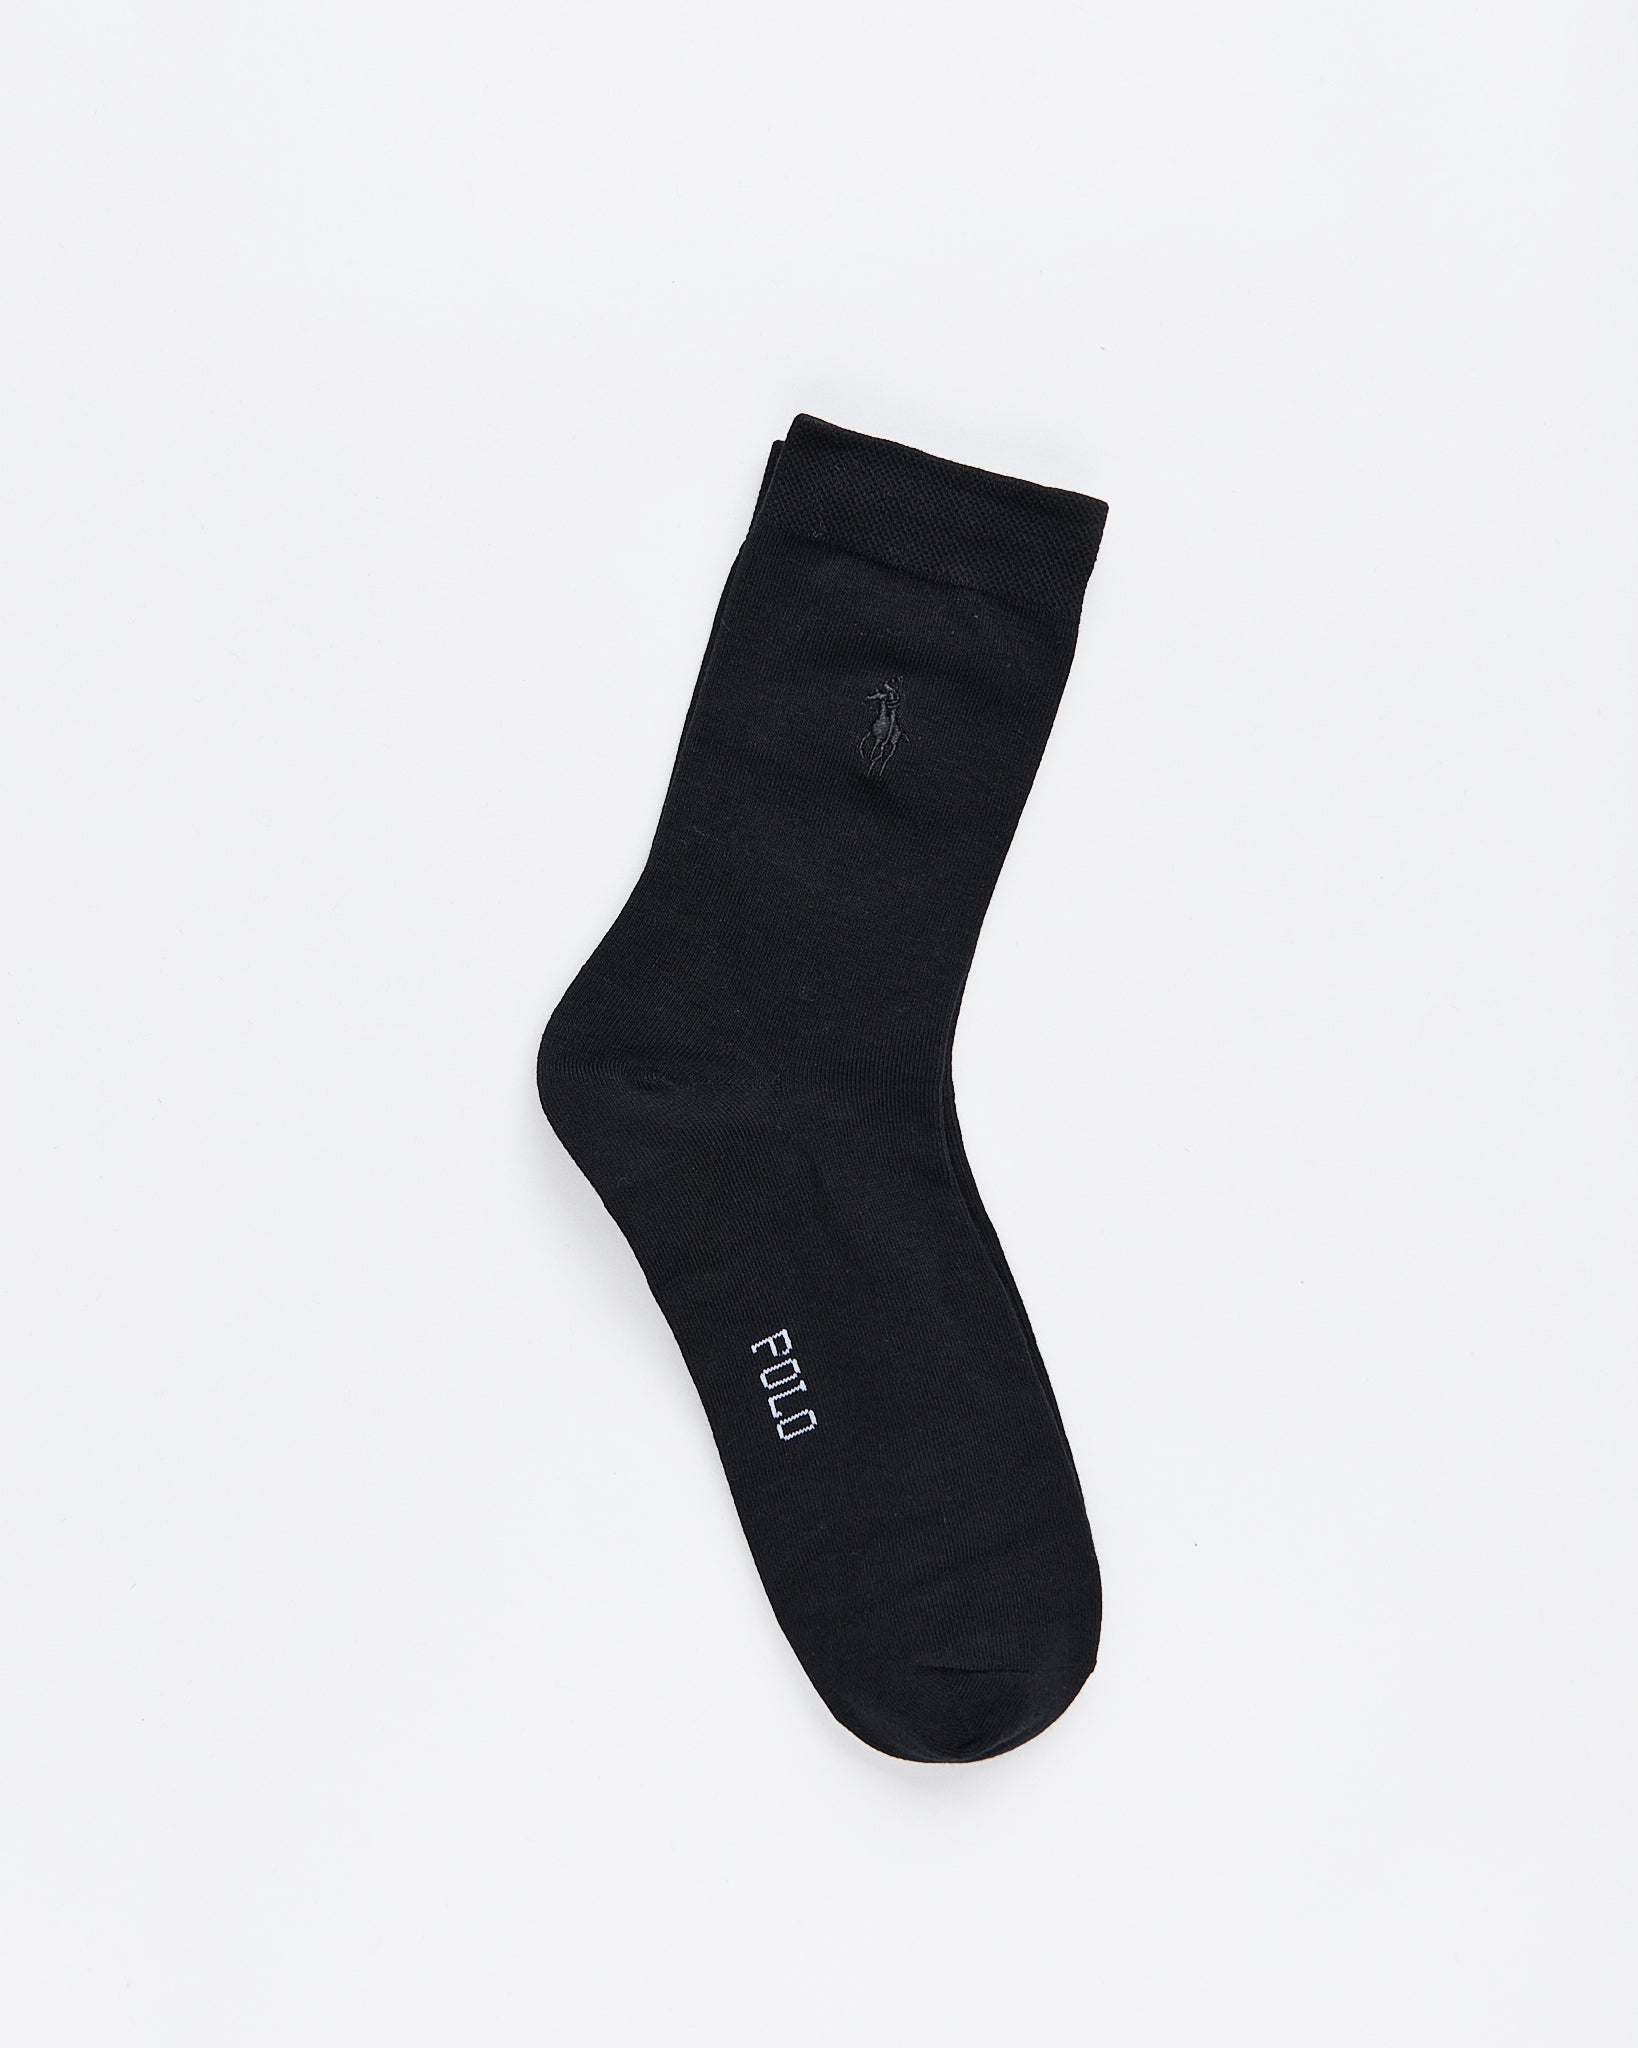 RL Black Quarter 5 Pairs Socks 15.90